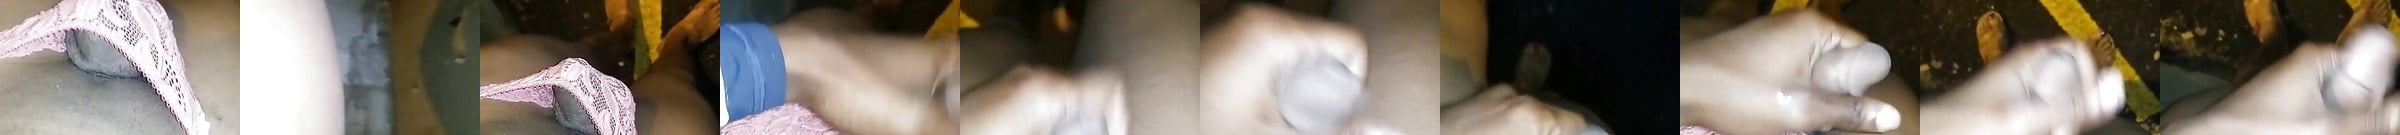 Boricua Chubby Guy Deepthroat A Cd Outdoor Gay Porn E6 Es